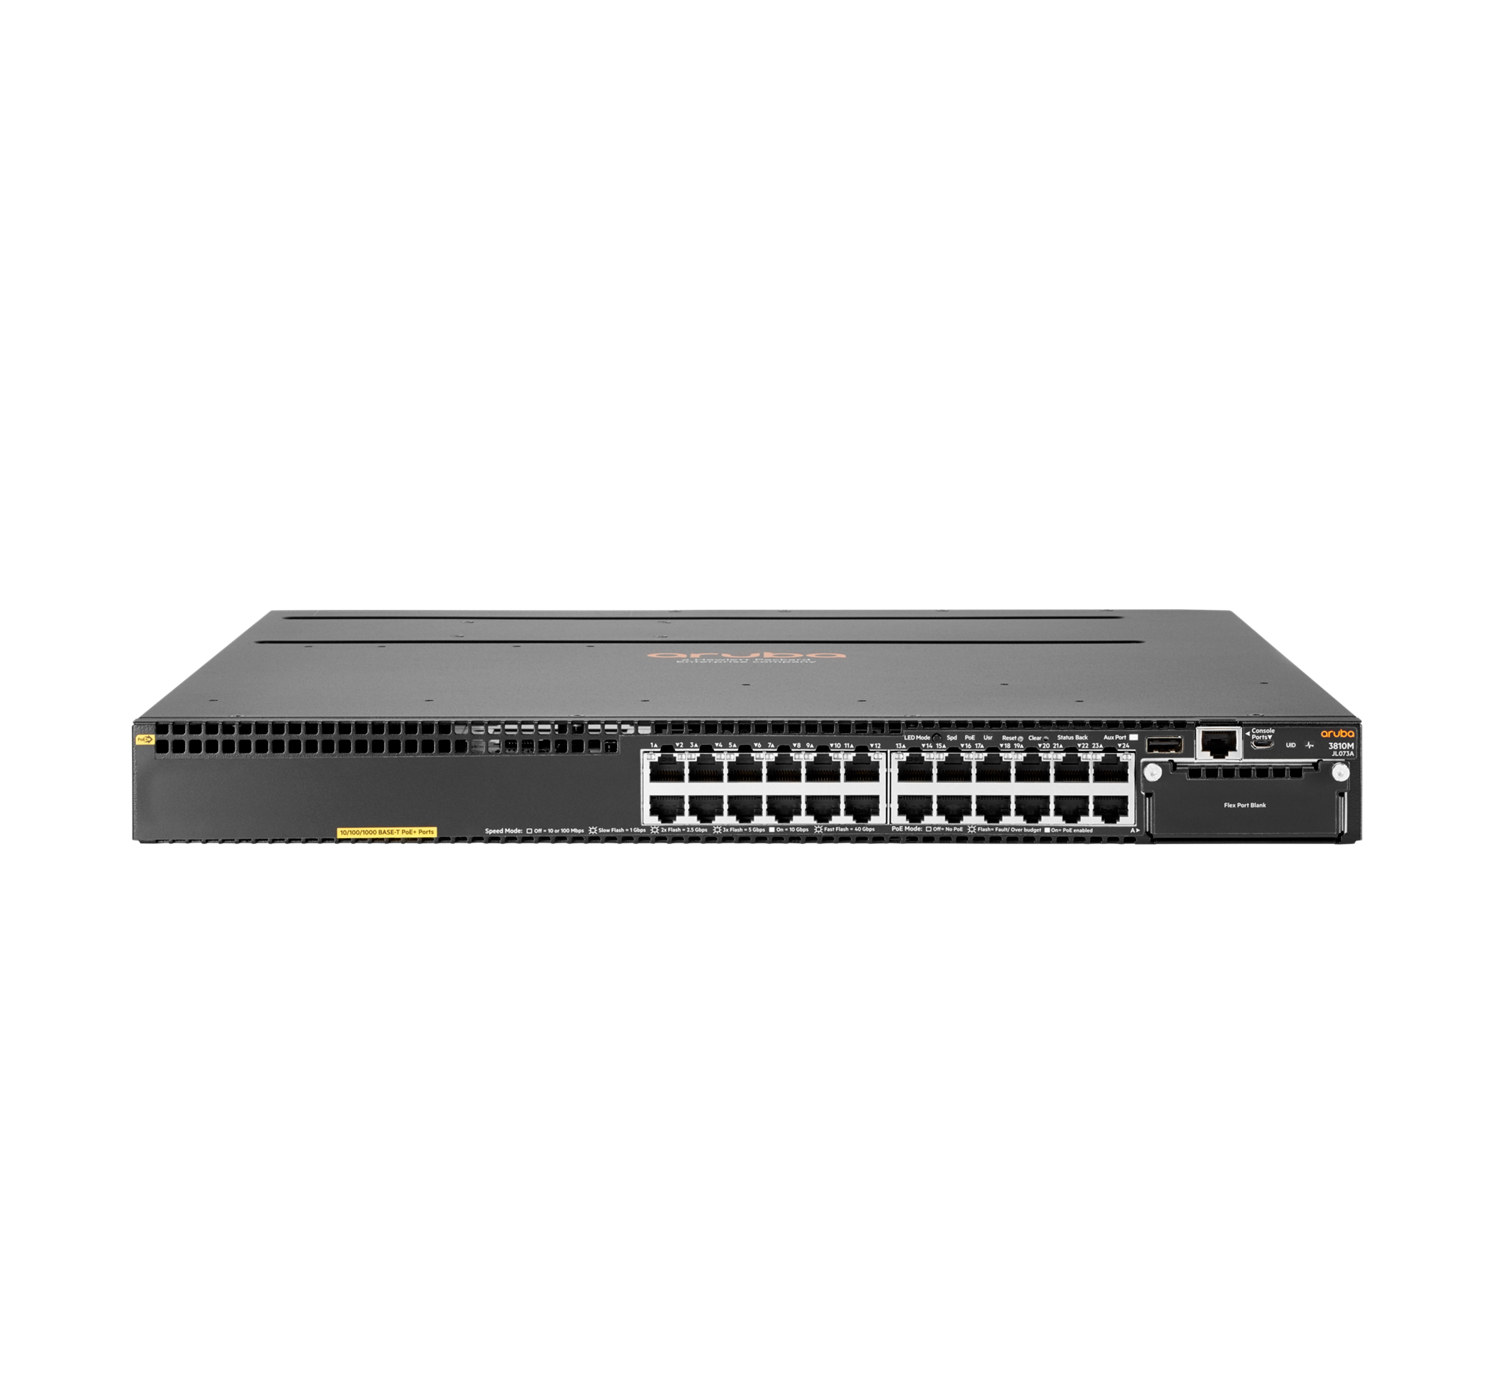 Ethernet　PoE+　over　Black　Aruba　(PoE)　Power　3810M　Gigabit　L3　24G　(10/100/1000)　1-slot　Managed　Ethernet　1U